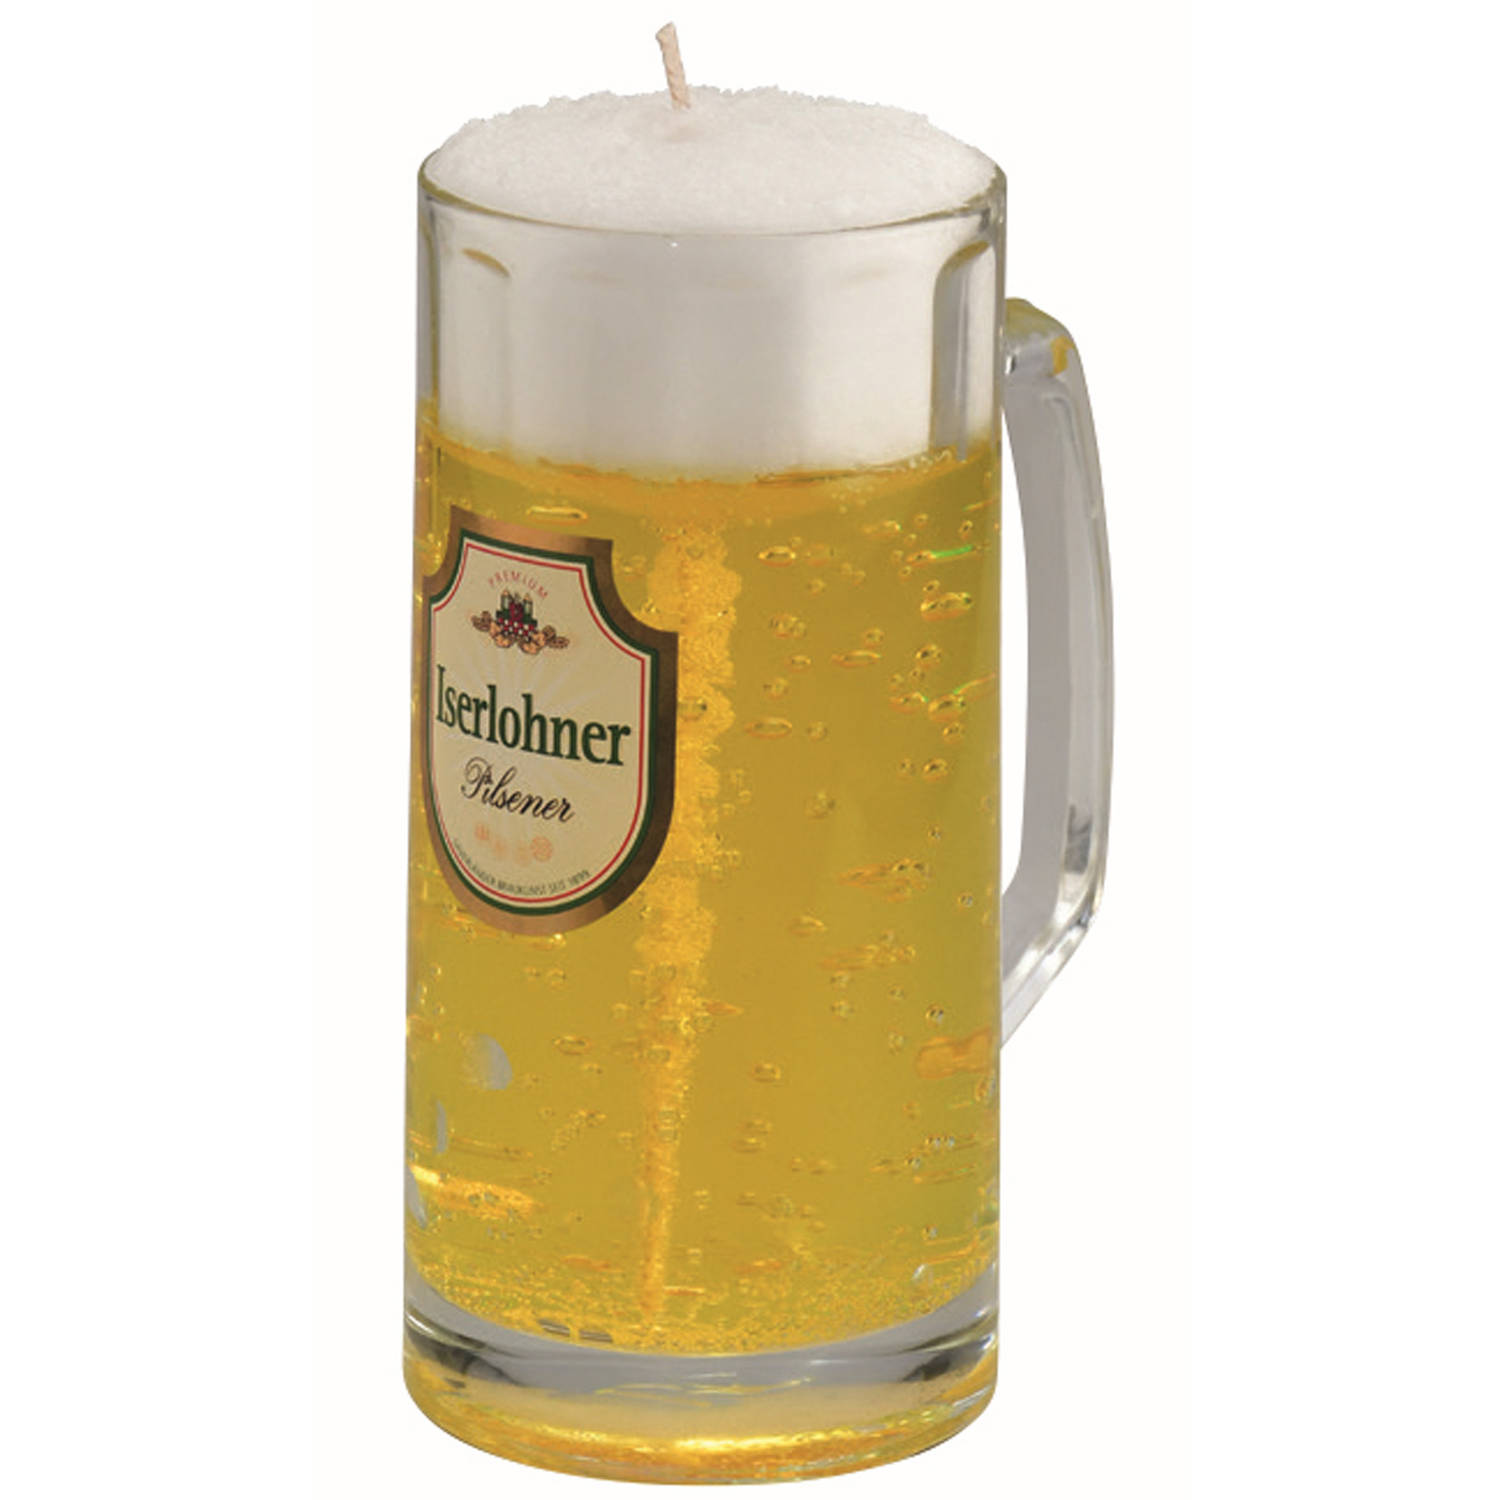 Bierglas gadget/kado Bierkaars - Duits bier - 15 cm - Vaderdag/verjaardag - figuurkaarsen